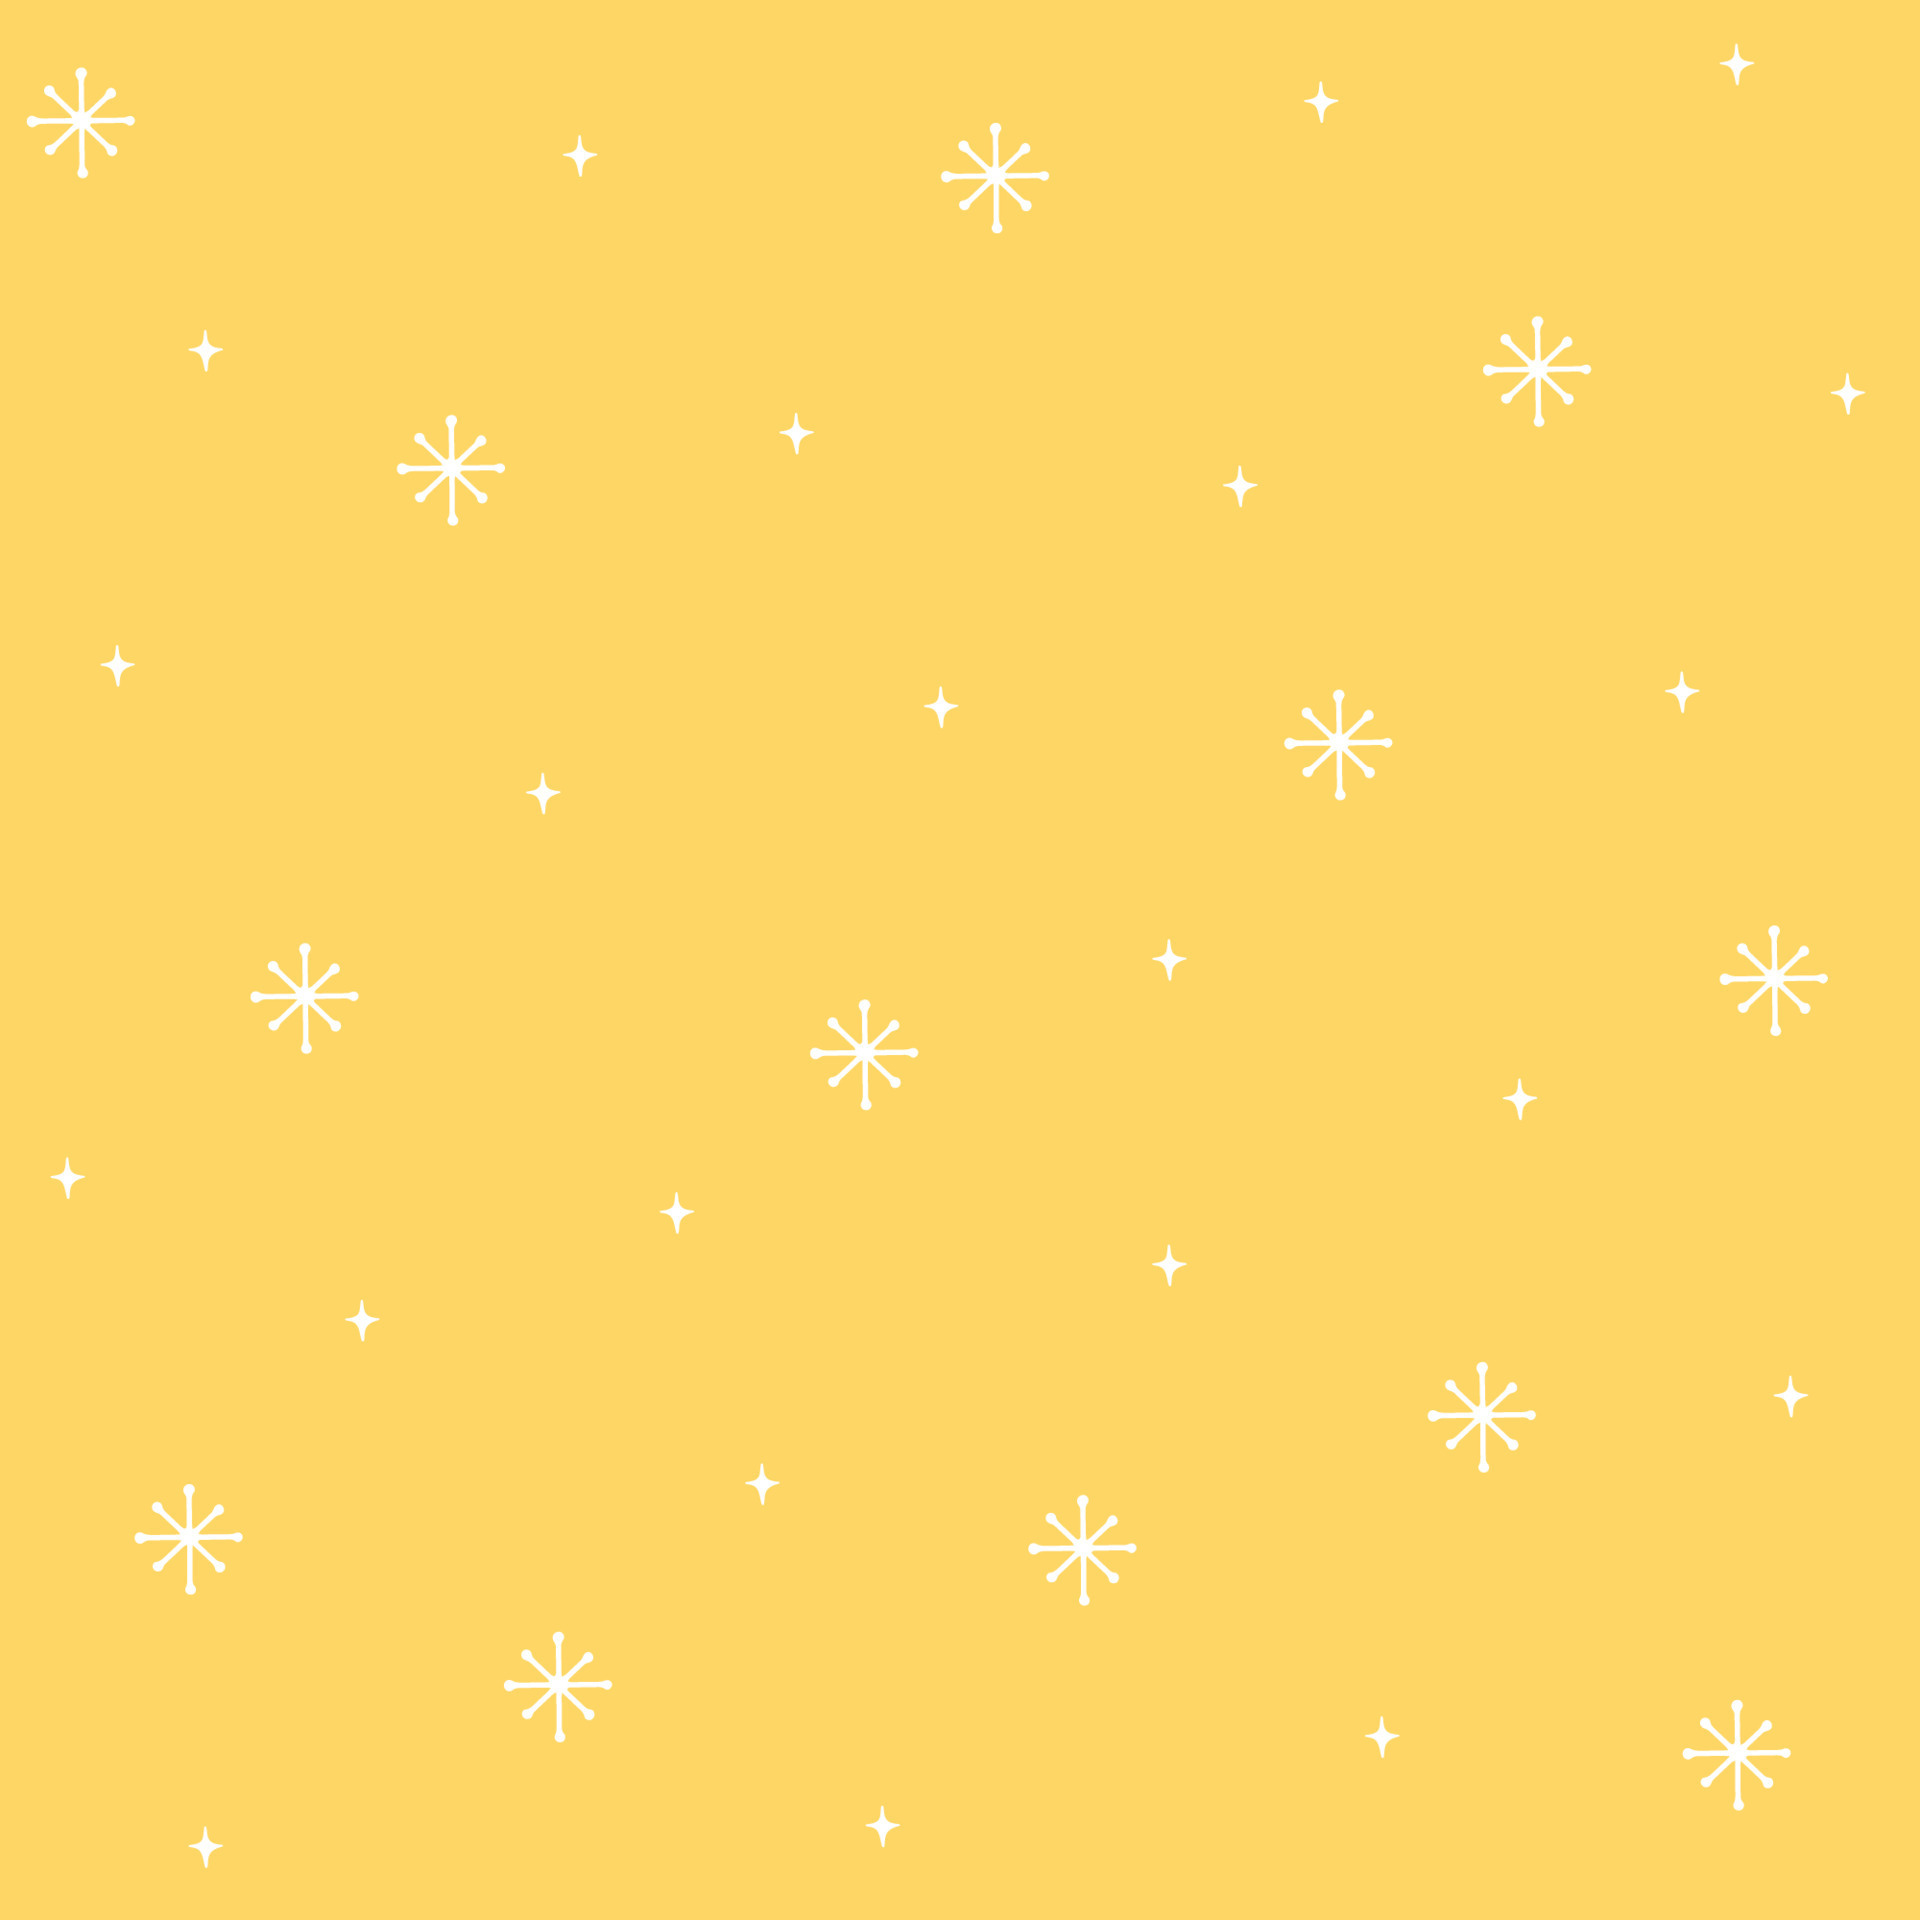 Mẫu đơn giản tuyết tinh trên nền vàng Seamless Background được tạo nên từ những hình ảnh tinh tế và đơn giản, tạo nên vẻ đẹp tuyệt vời cho không gian của bạn. Sự kết hợp giữa hình ảnh tuyết tinh và nền vàng tạo nên một hình ảnh nhẹ nhàng và thanh thoát. Hãy bấm vào hình ảnh để cảm nhận sự thư thái và tĩnh lặng của mùa đông.